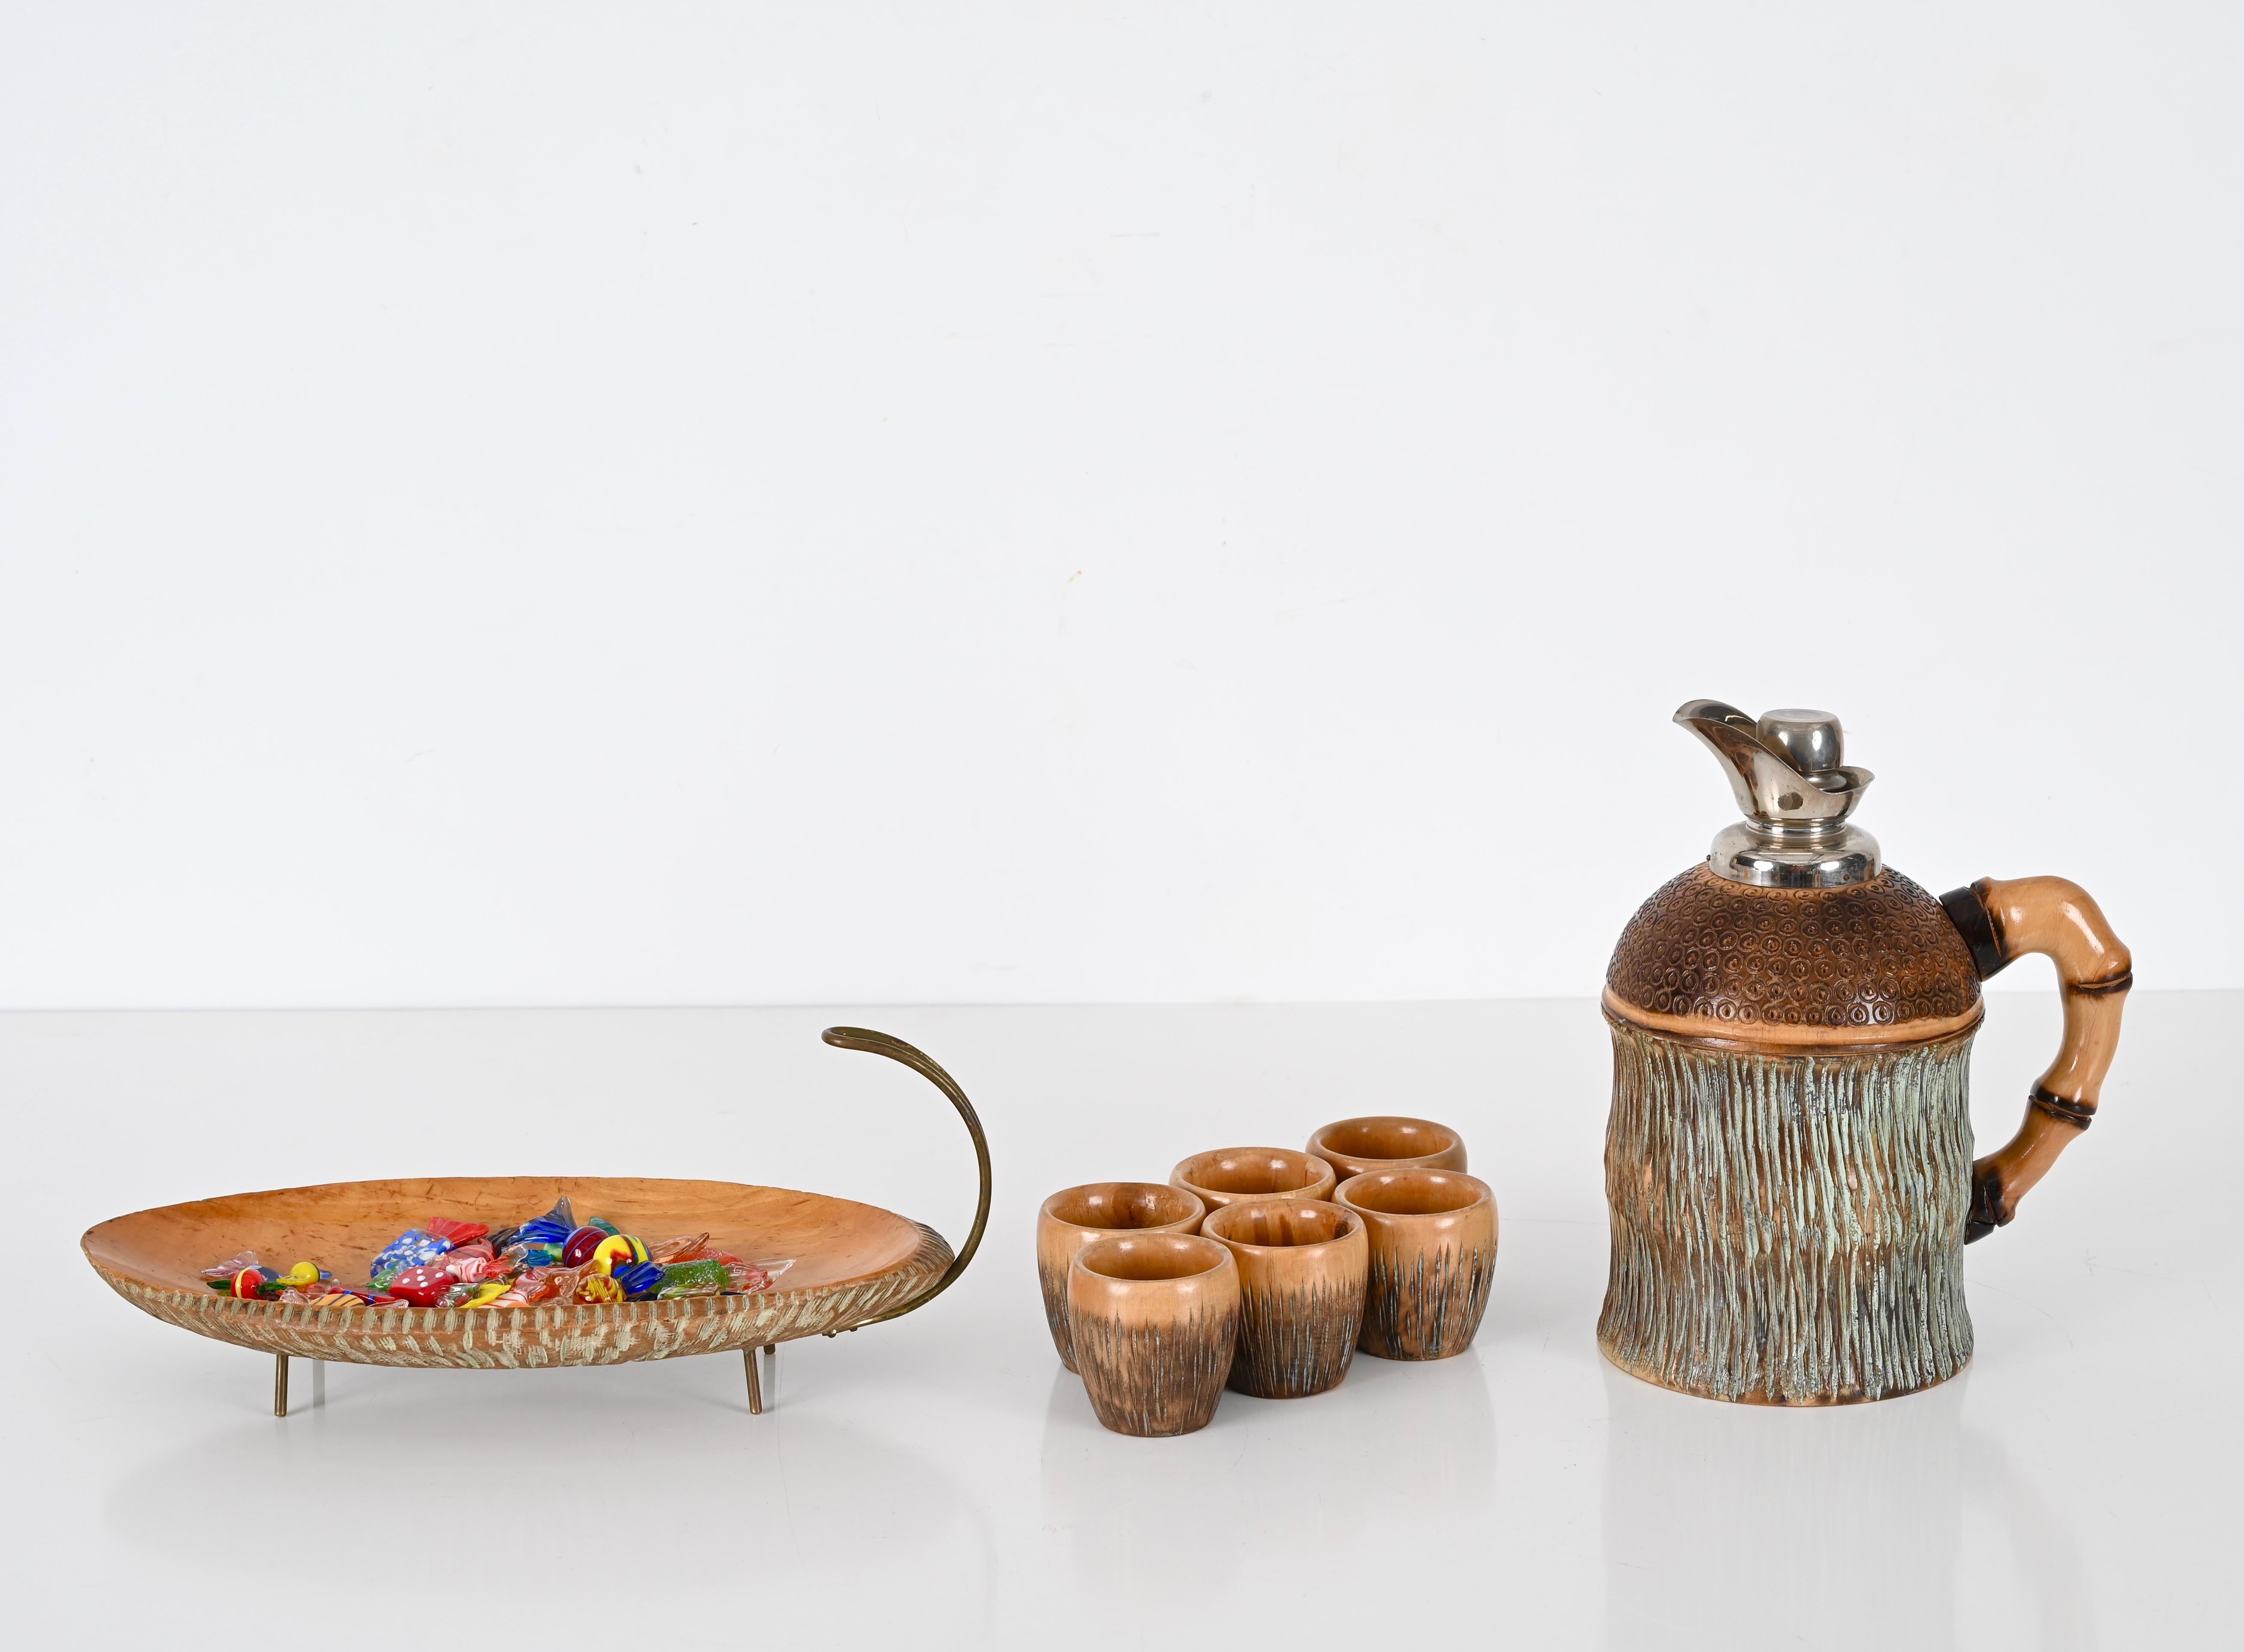 Magnifique set de bar en bois sculpté et laiton. Ce joli coffret a été conçu par Aldo Tura et produit par Macabo à Milan, en Italie, dans les années 1950.

Le set se compose d'un pichet, de 6 verres et d'un bol. Entièrement fabriqué à la main avec